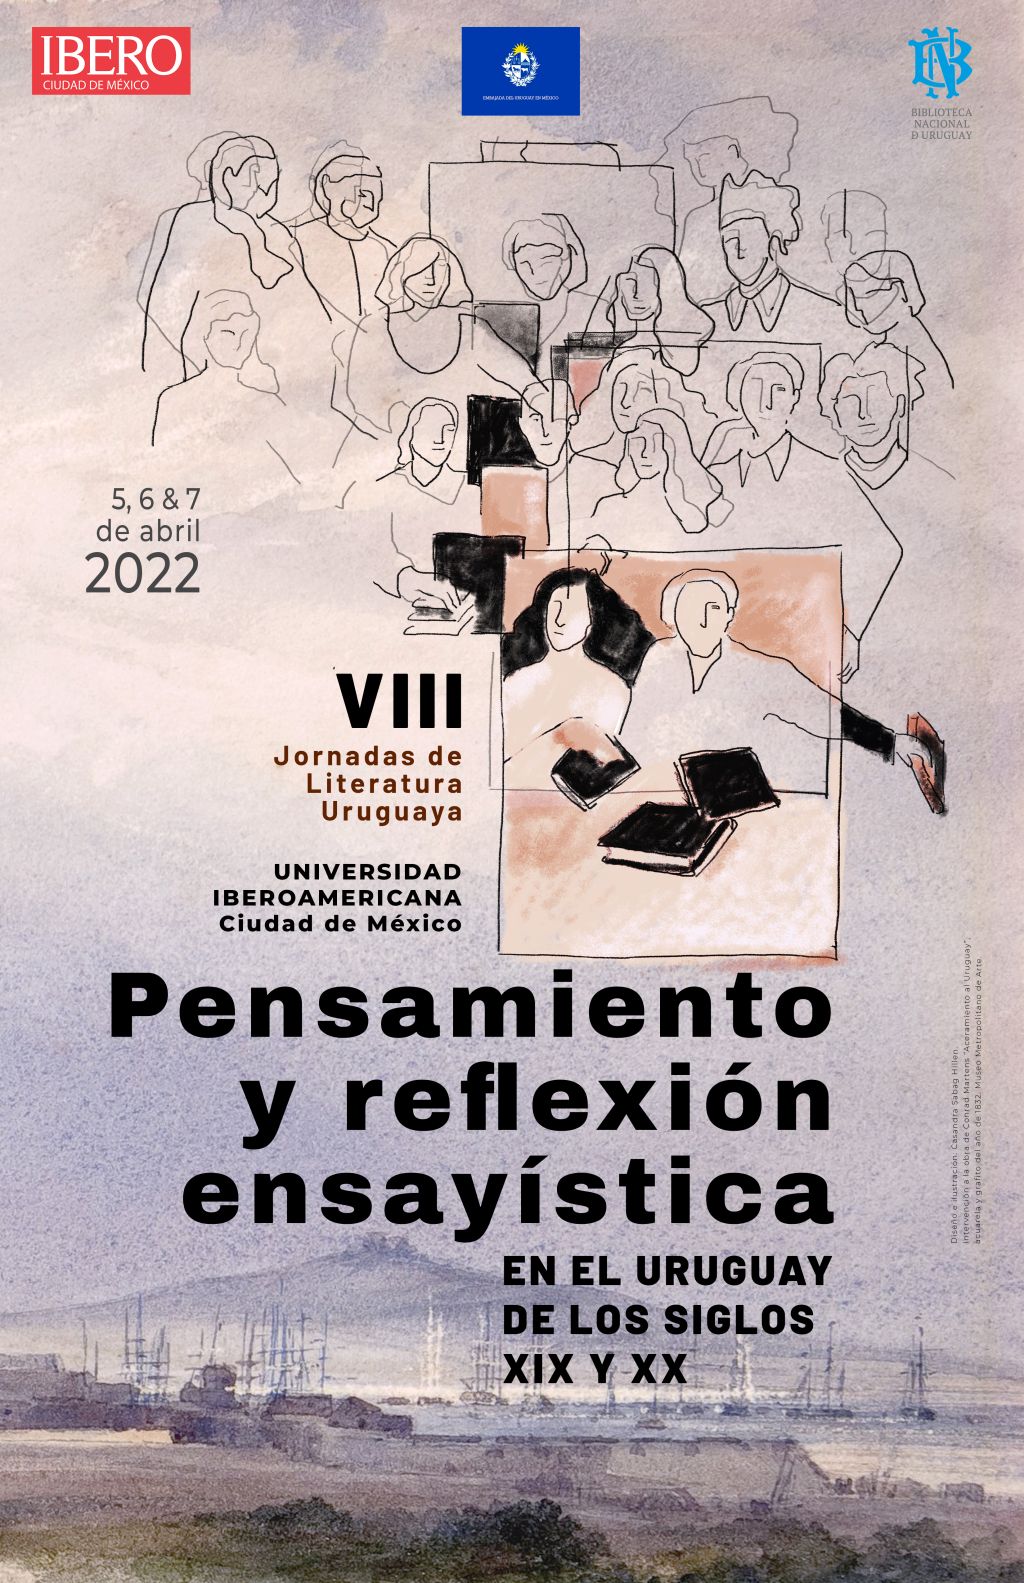 VIII Jornadas de Literatura Uruguaya: Pensamiento y reflexión ensayística en el Uruguay de los siglos XIX y XX